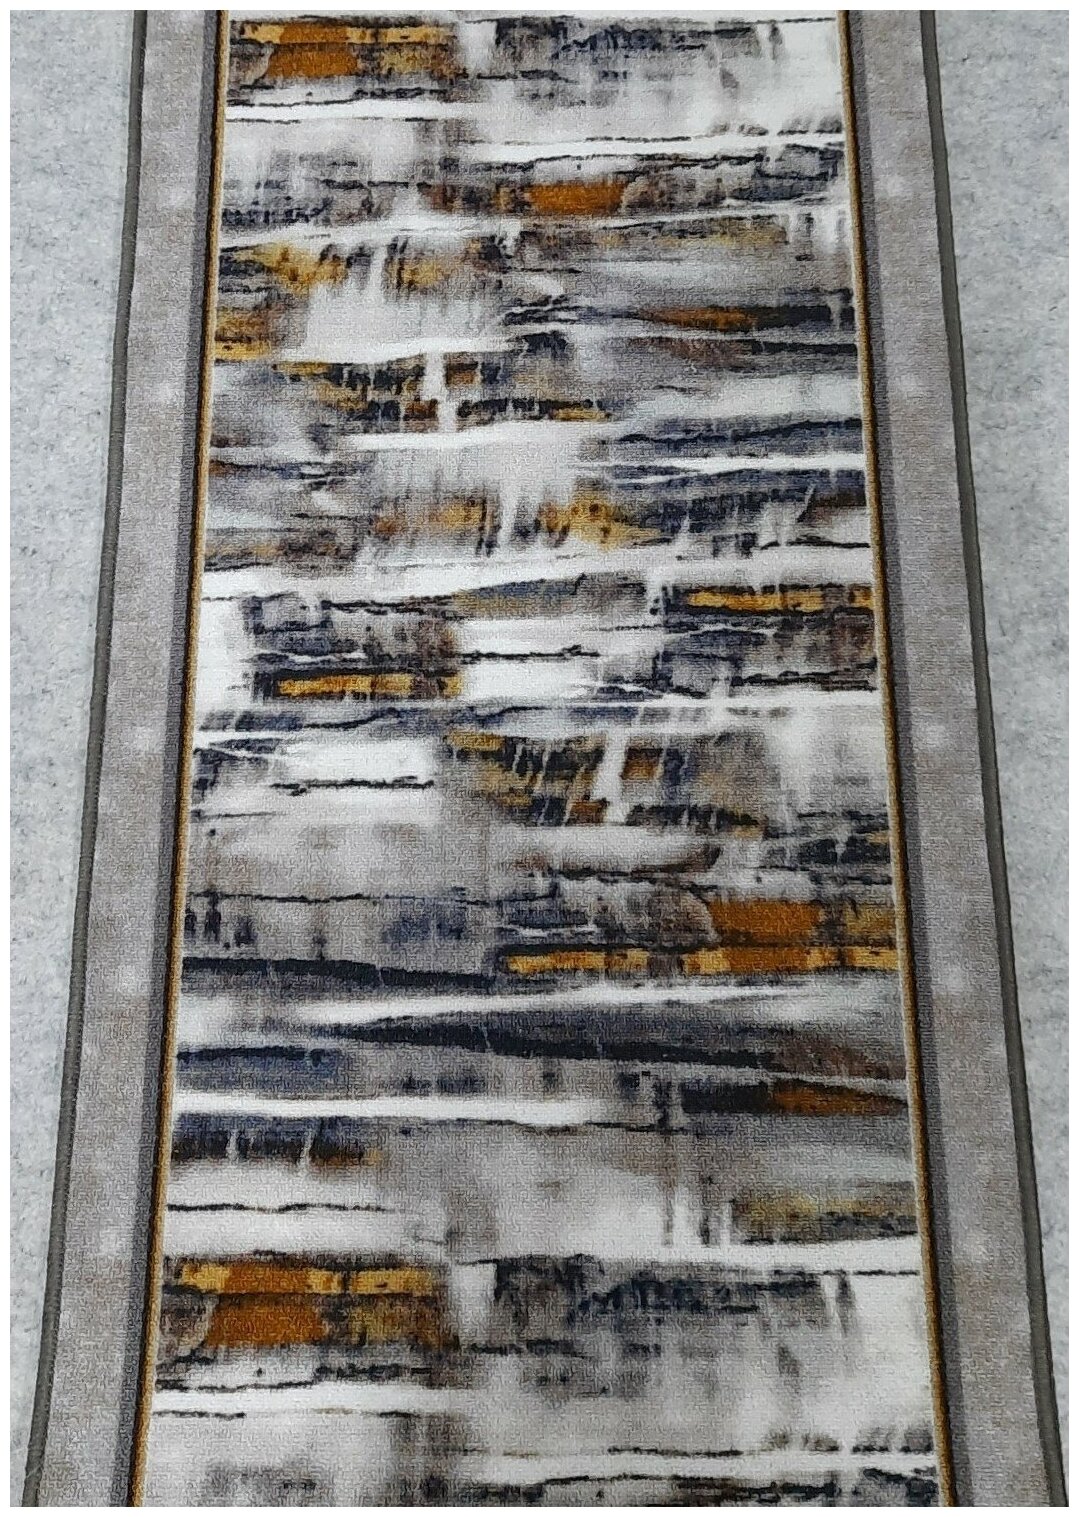 Ковровая дорожка на войлоке, Витебские ковры, с печатным рисунком, 2603/a2r/91, 0,7×1.5 м